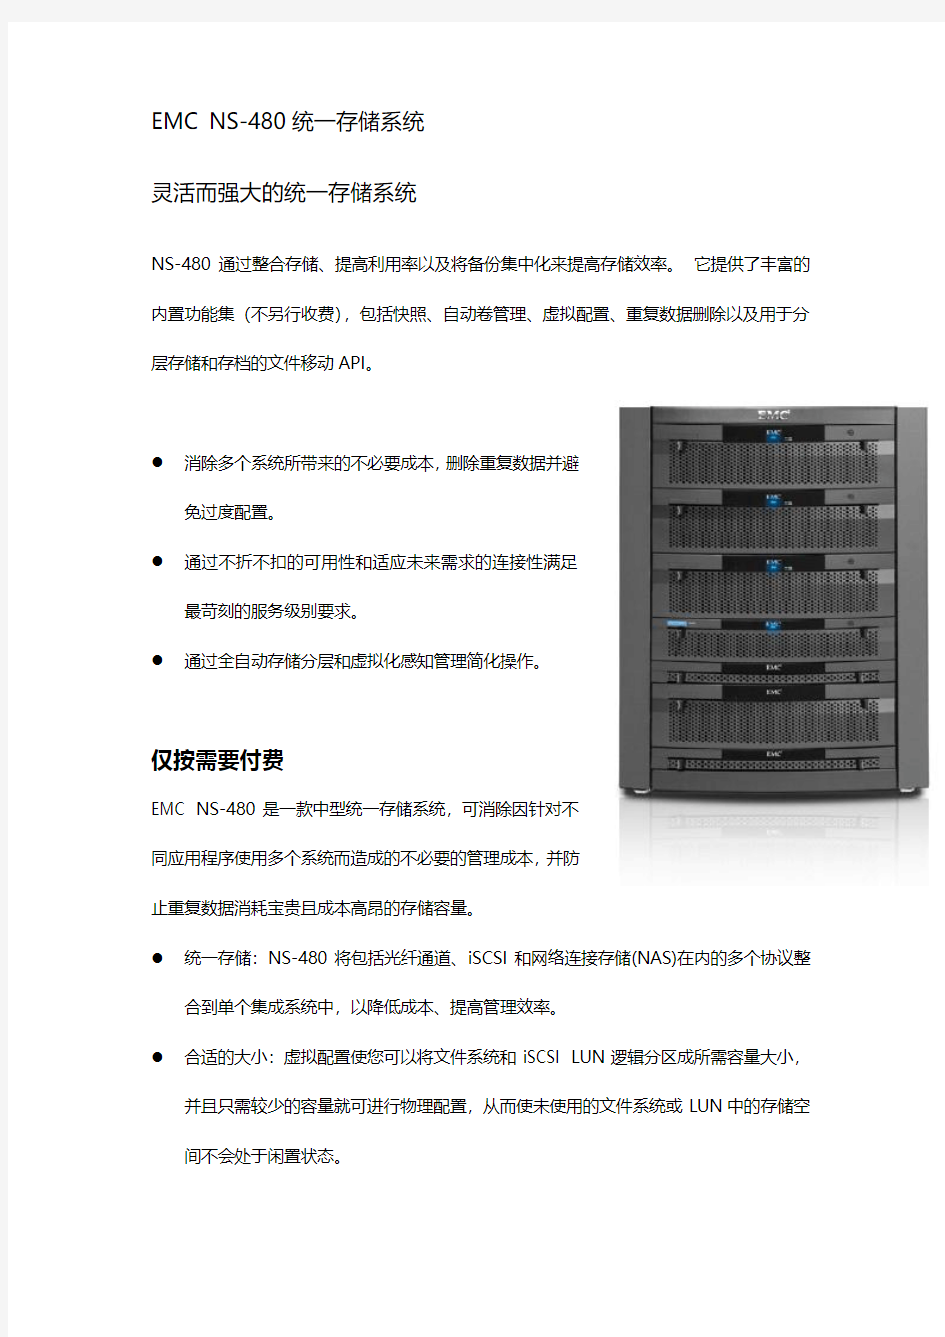 EMC NS-480统一存储系统性能介绍